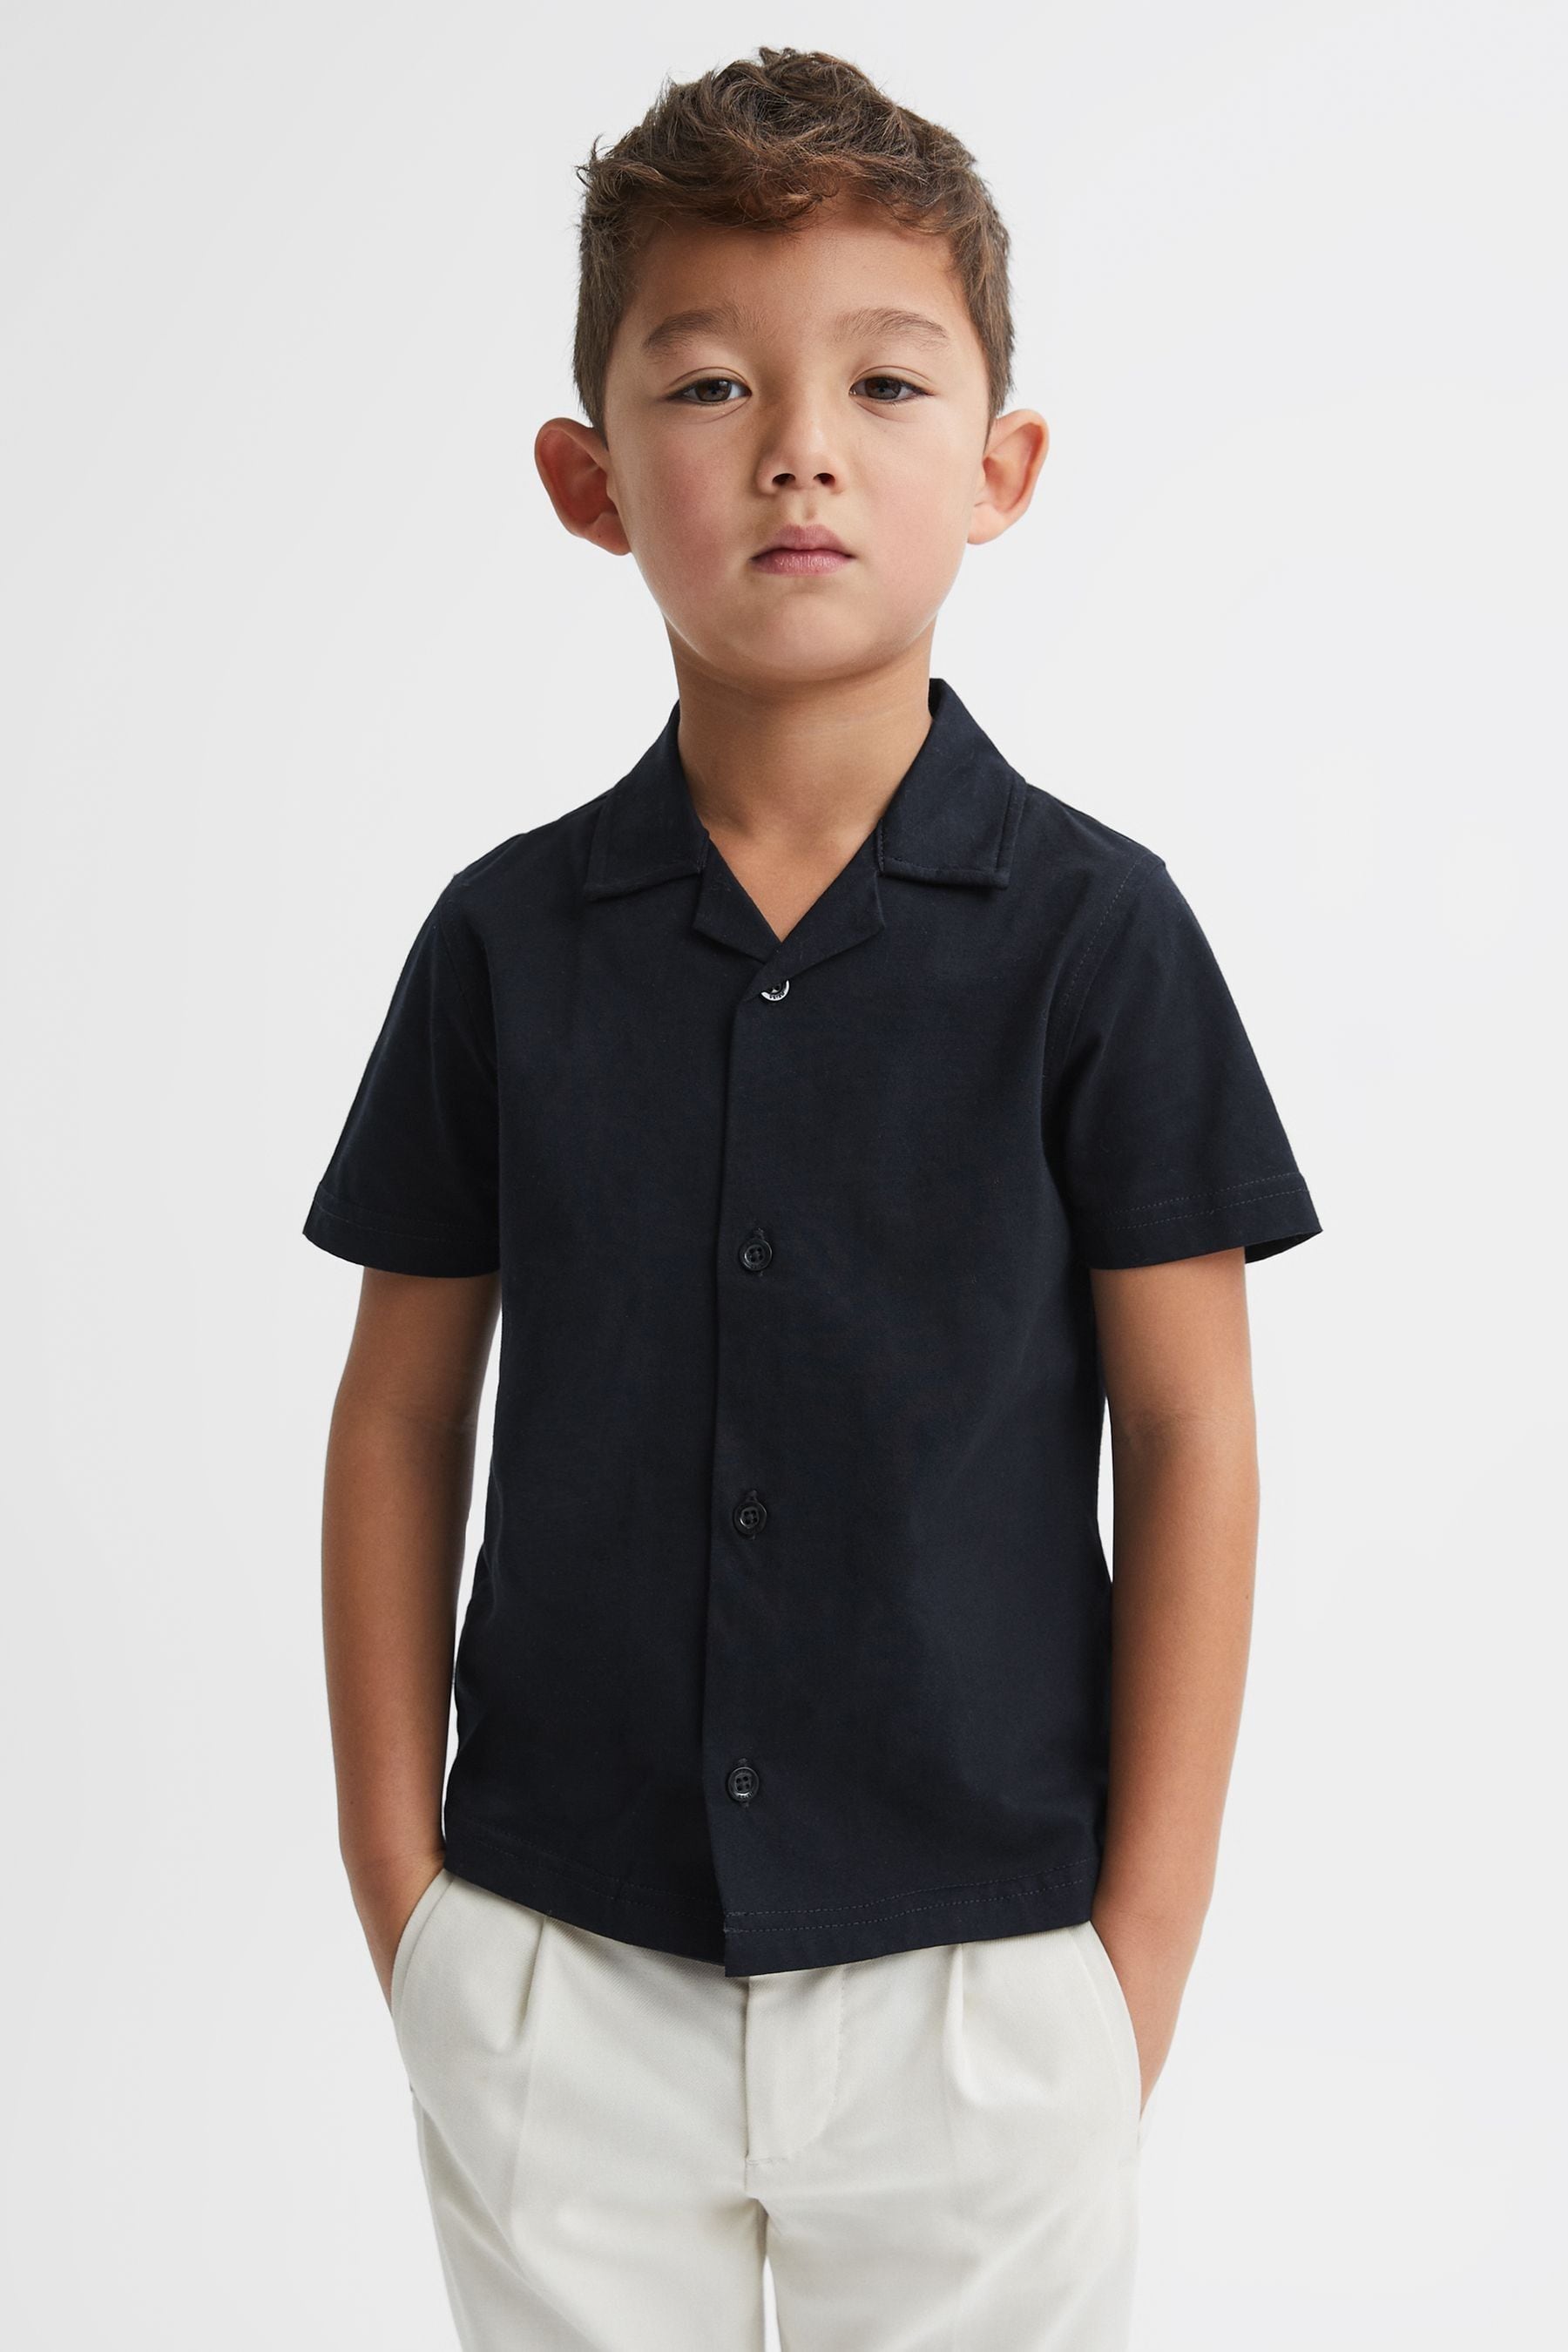 Reiss Kids' Caspa - Navy Cotton Cuban Collar Shirt, 9-10 Years